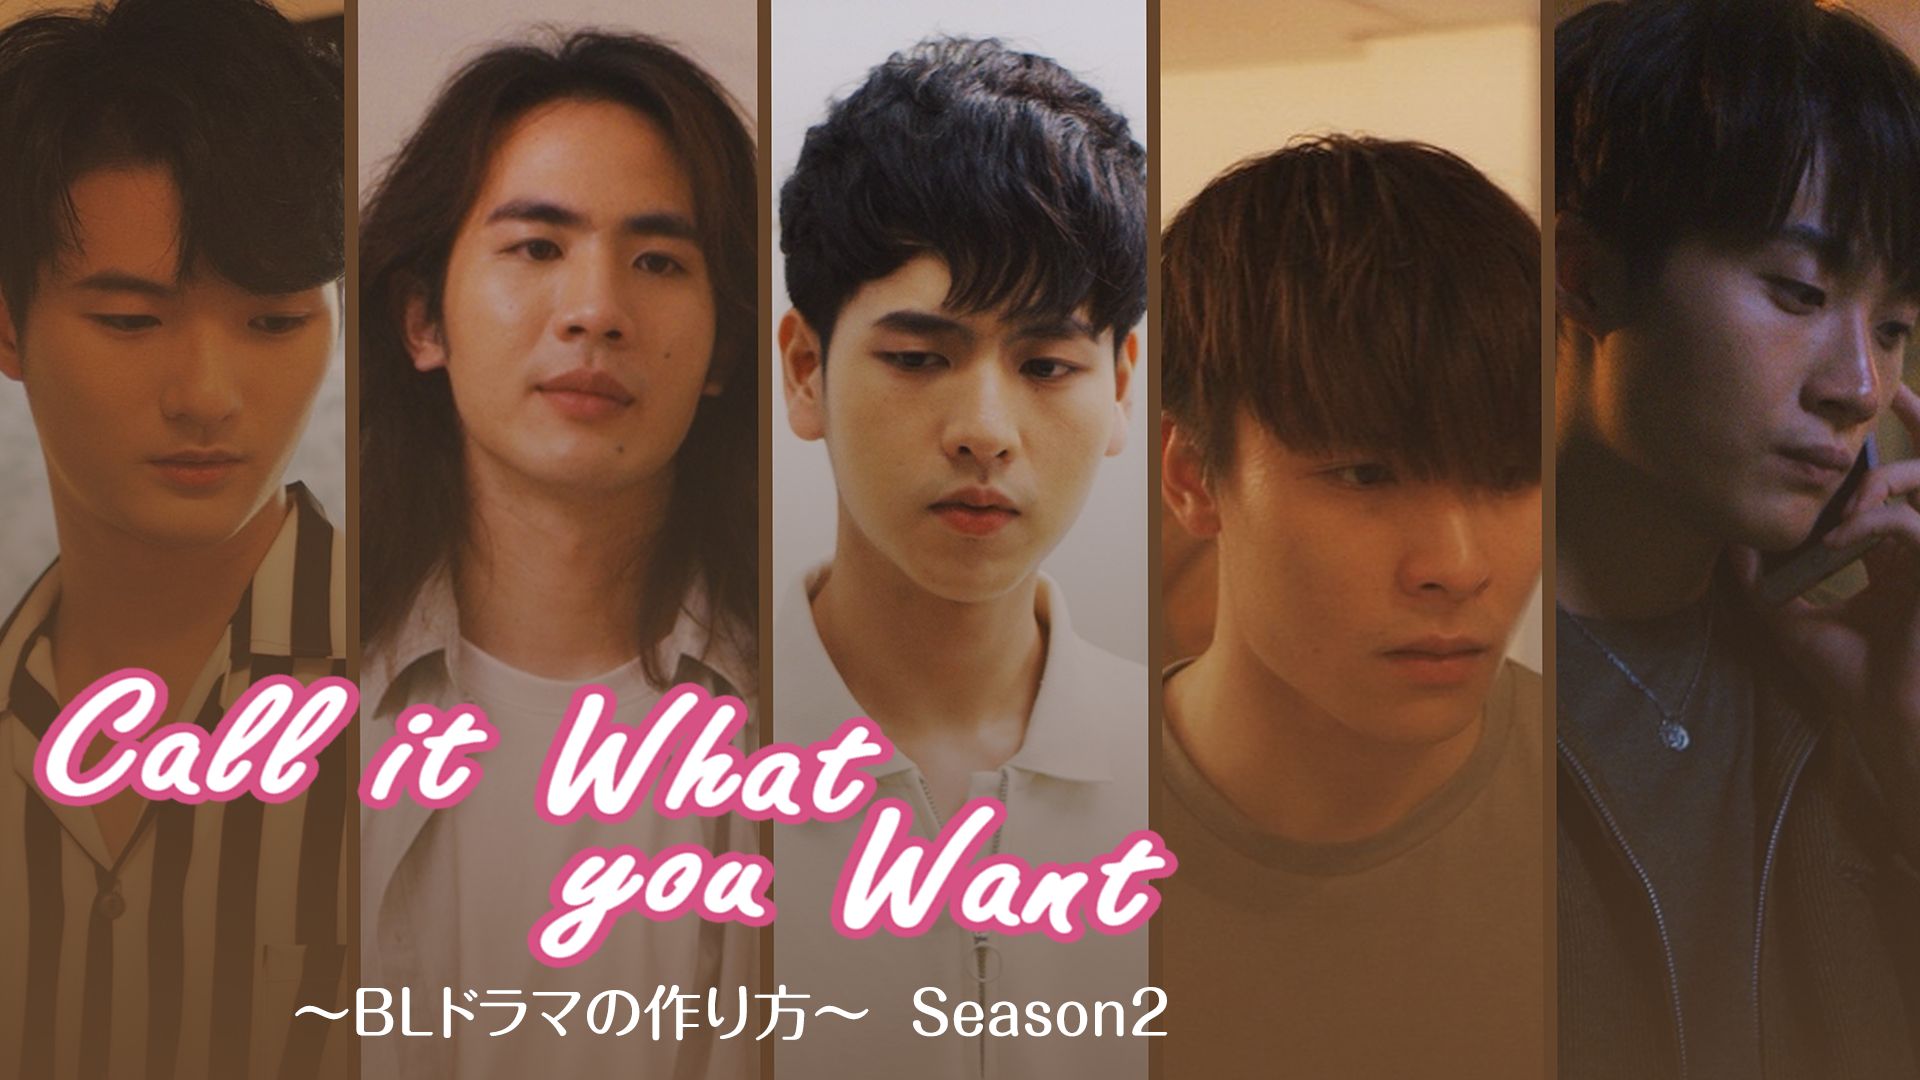 Call It What You Want Blドラマの作り方 Season2の動画を配信しているサービス 動画作品を探すならaukana